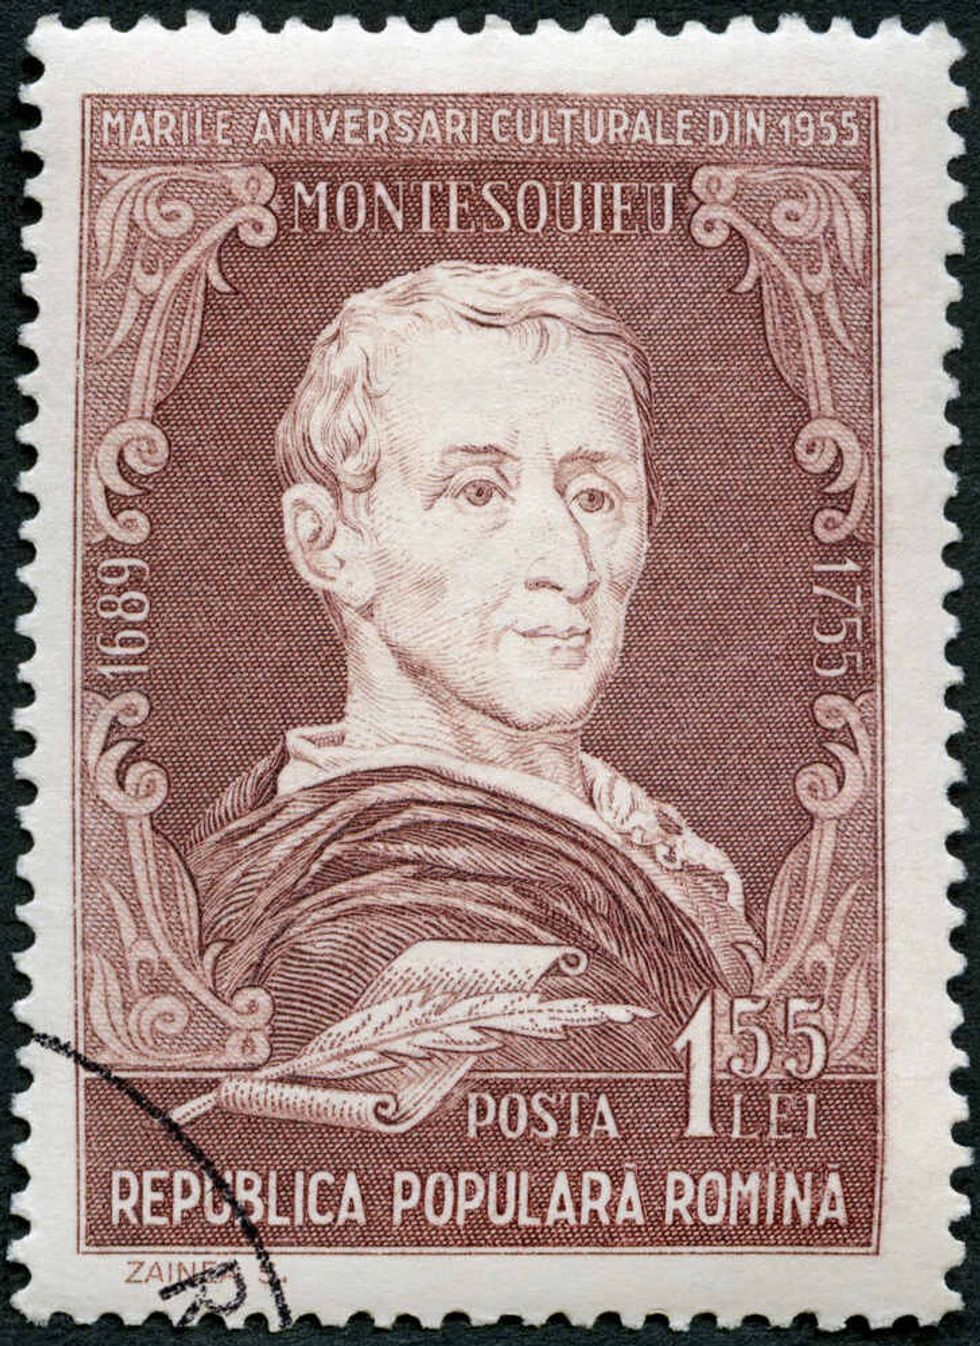 A stamp printed in Romania shows Baron Montesquieu